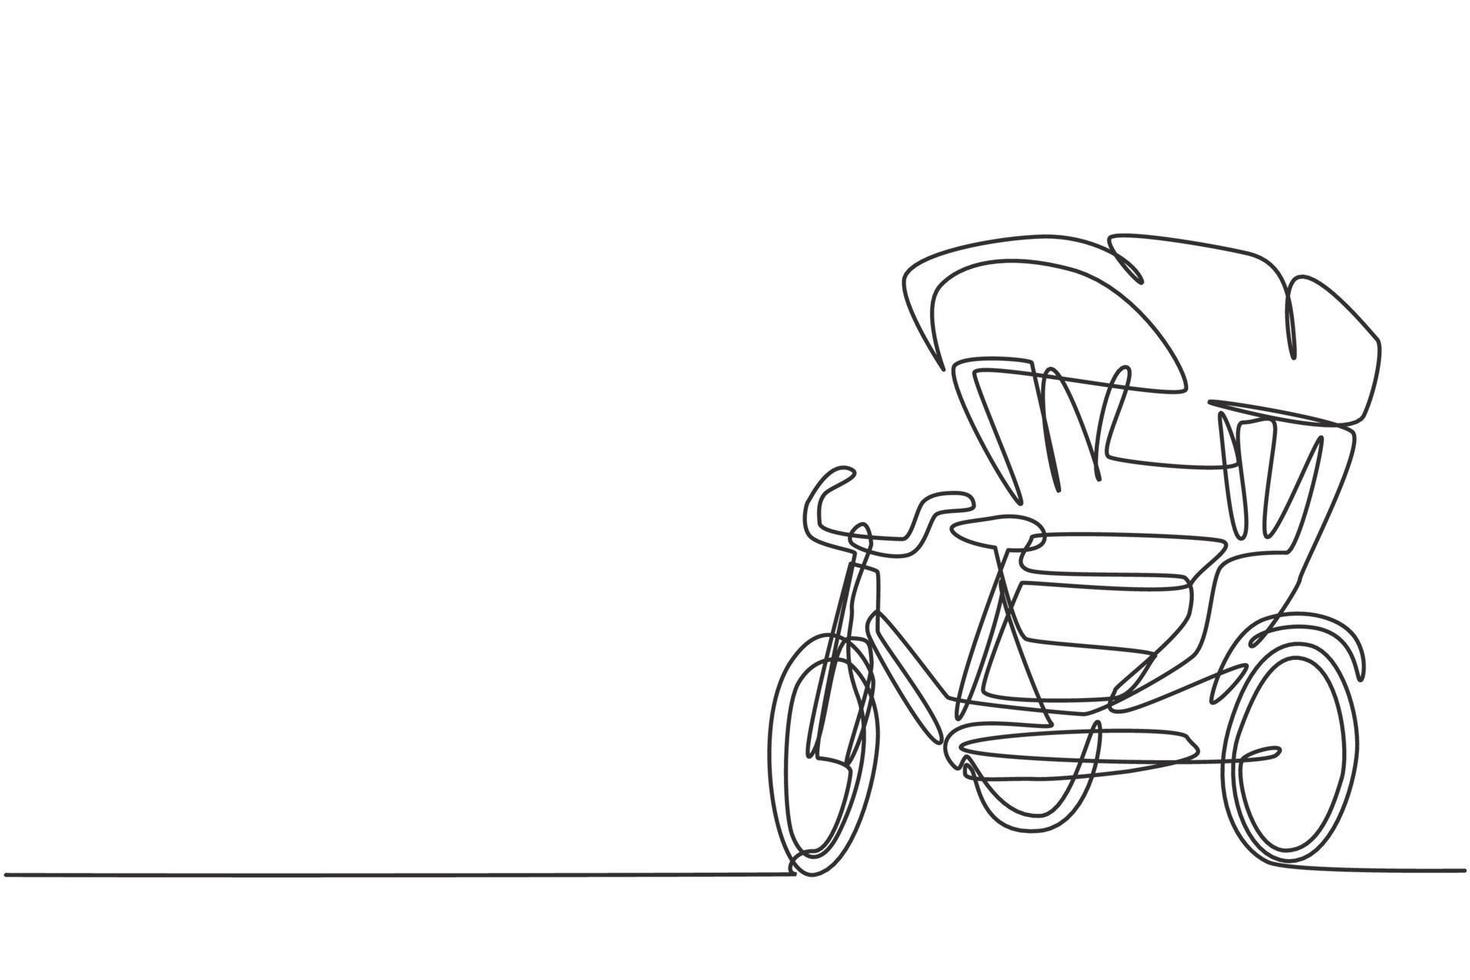 enstaka ritning av cykel -rickshaw med tre hjul och ett passagerarsäte bak är ett uråldrigt fordon i flera asiatiska länder. modern kontinuerlig linje rita design grafisk vektor illustration.